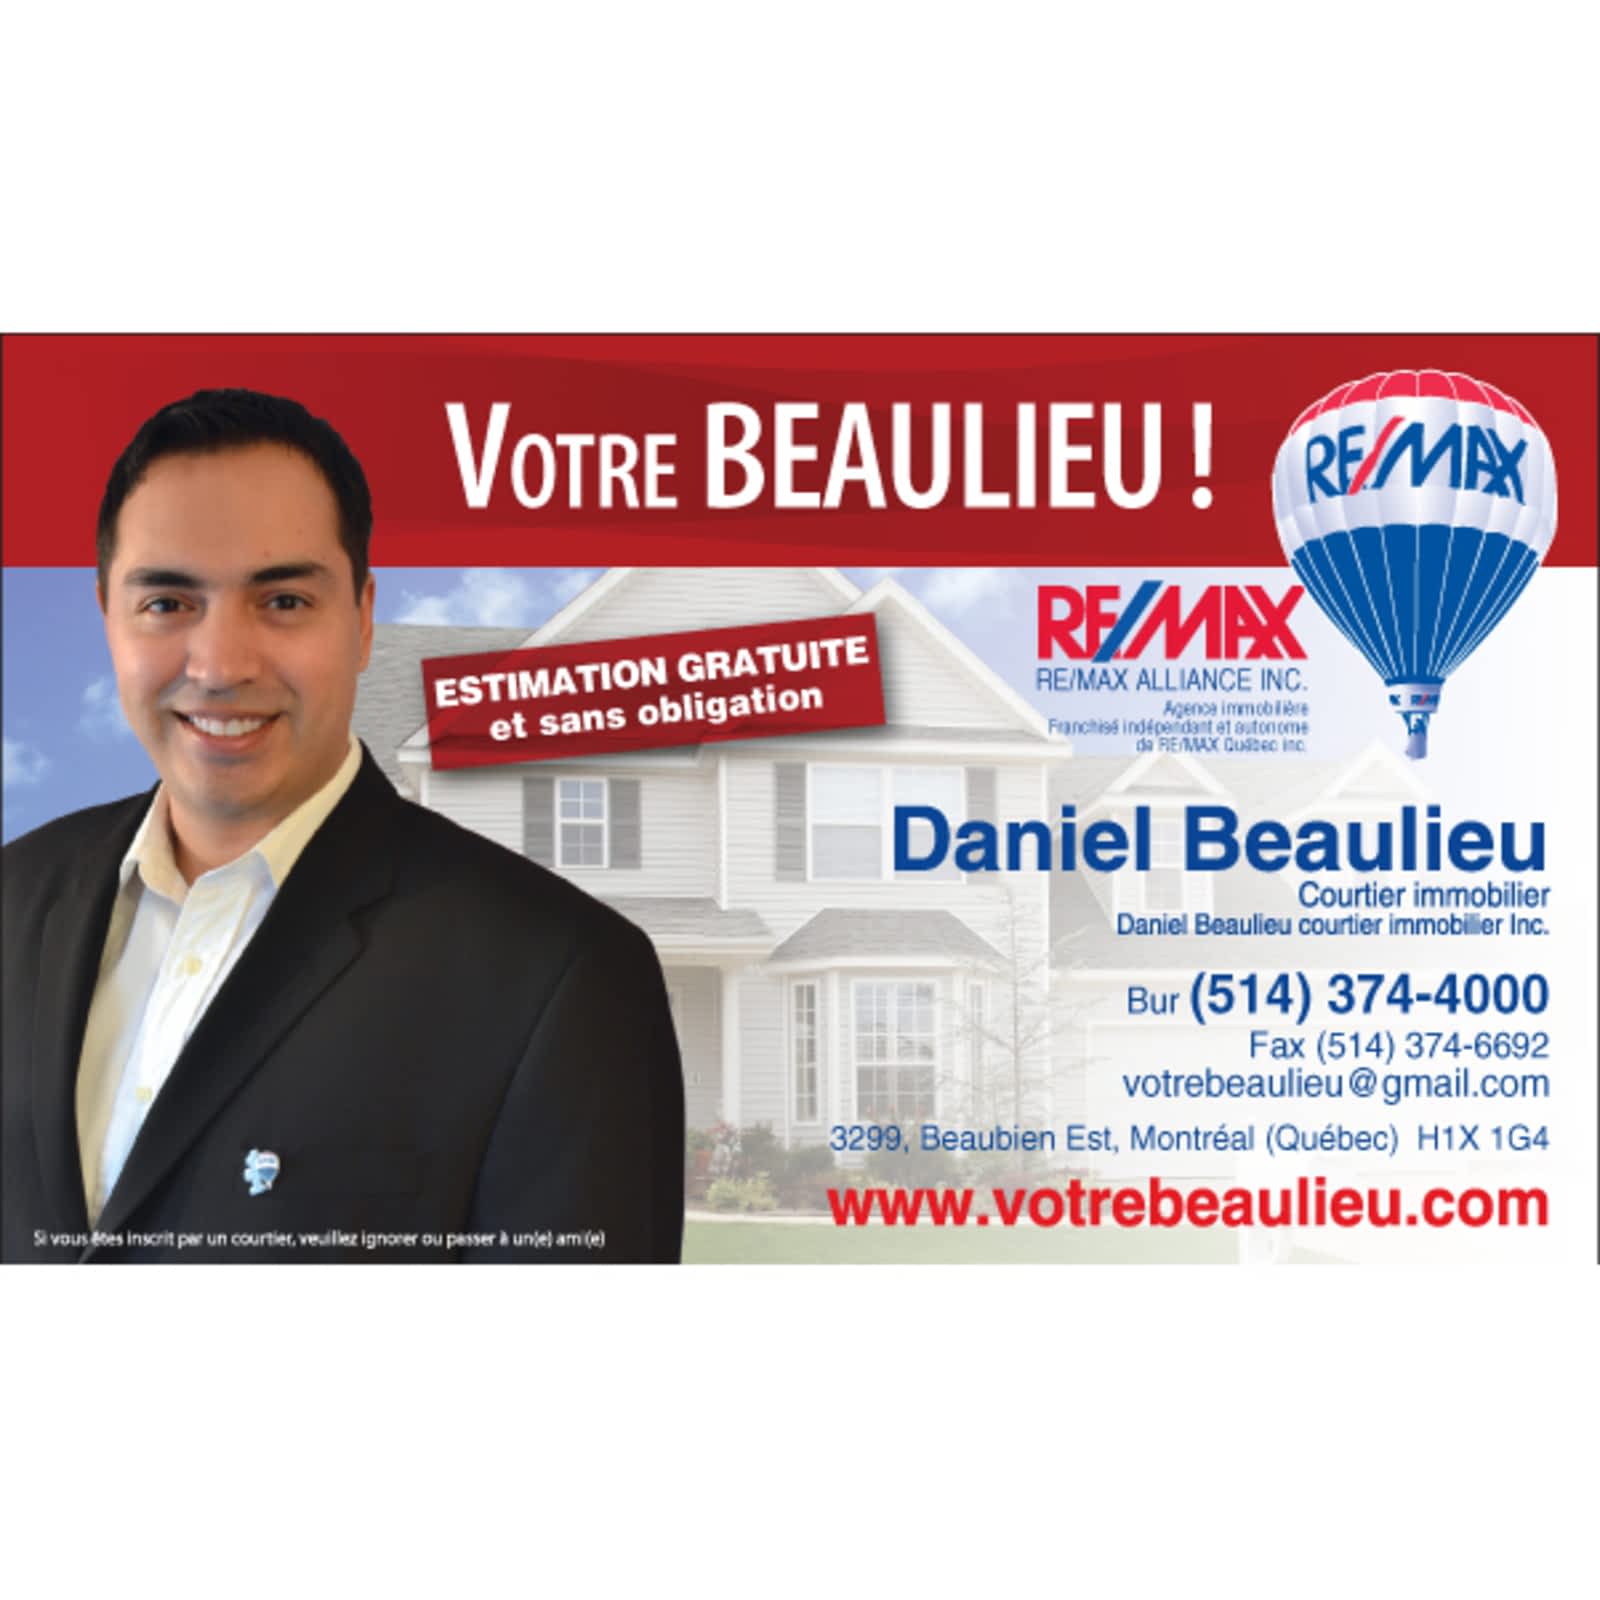 Daniel Beaulieu Courtier Immobilier Remax Opening Hours 3299 Rue Beaubien E Montreal Qc